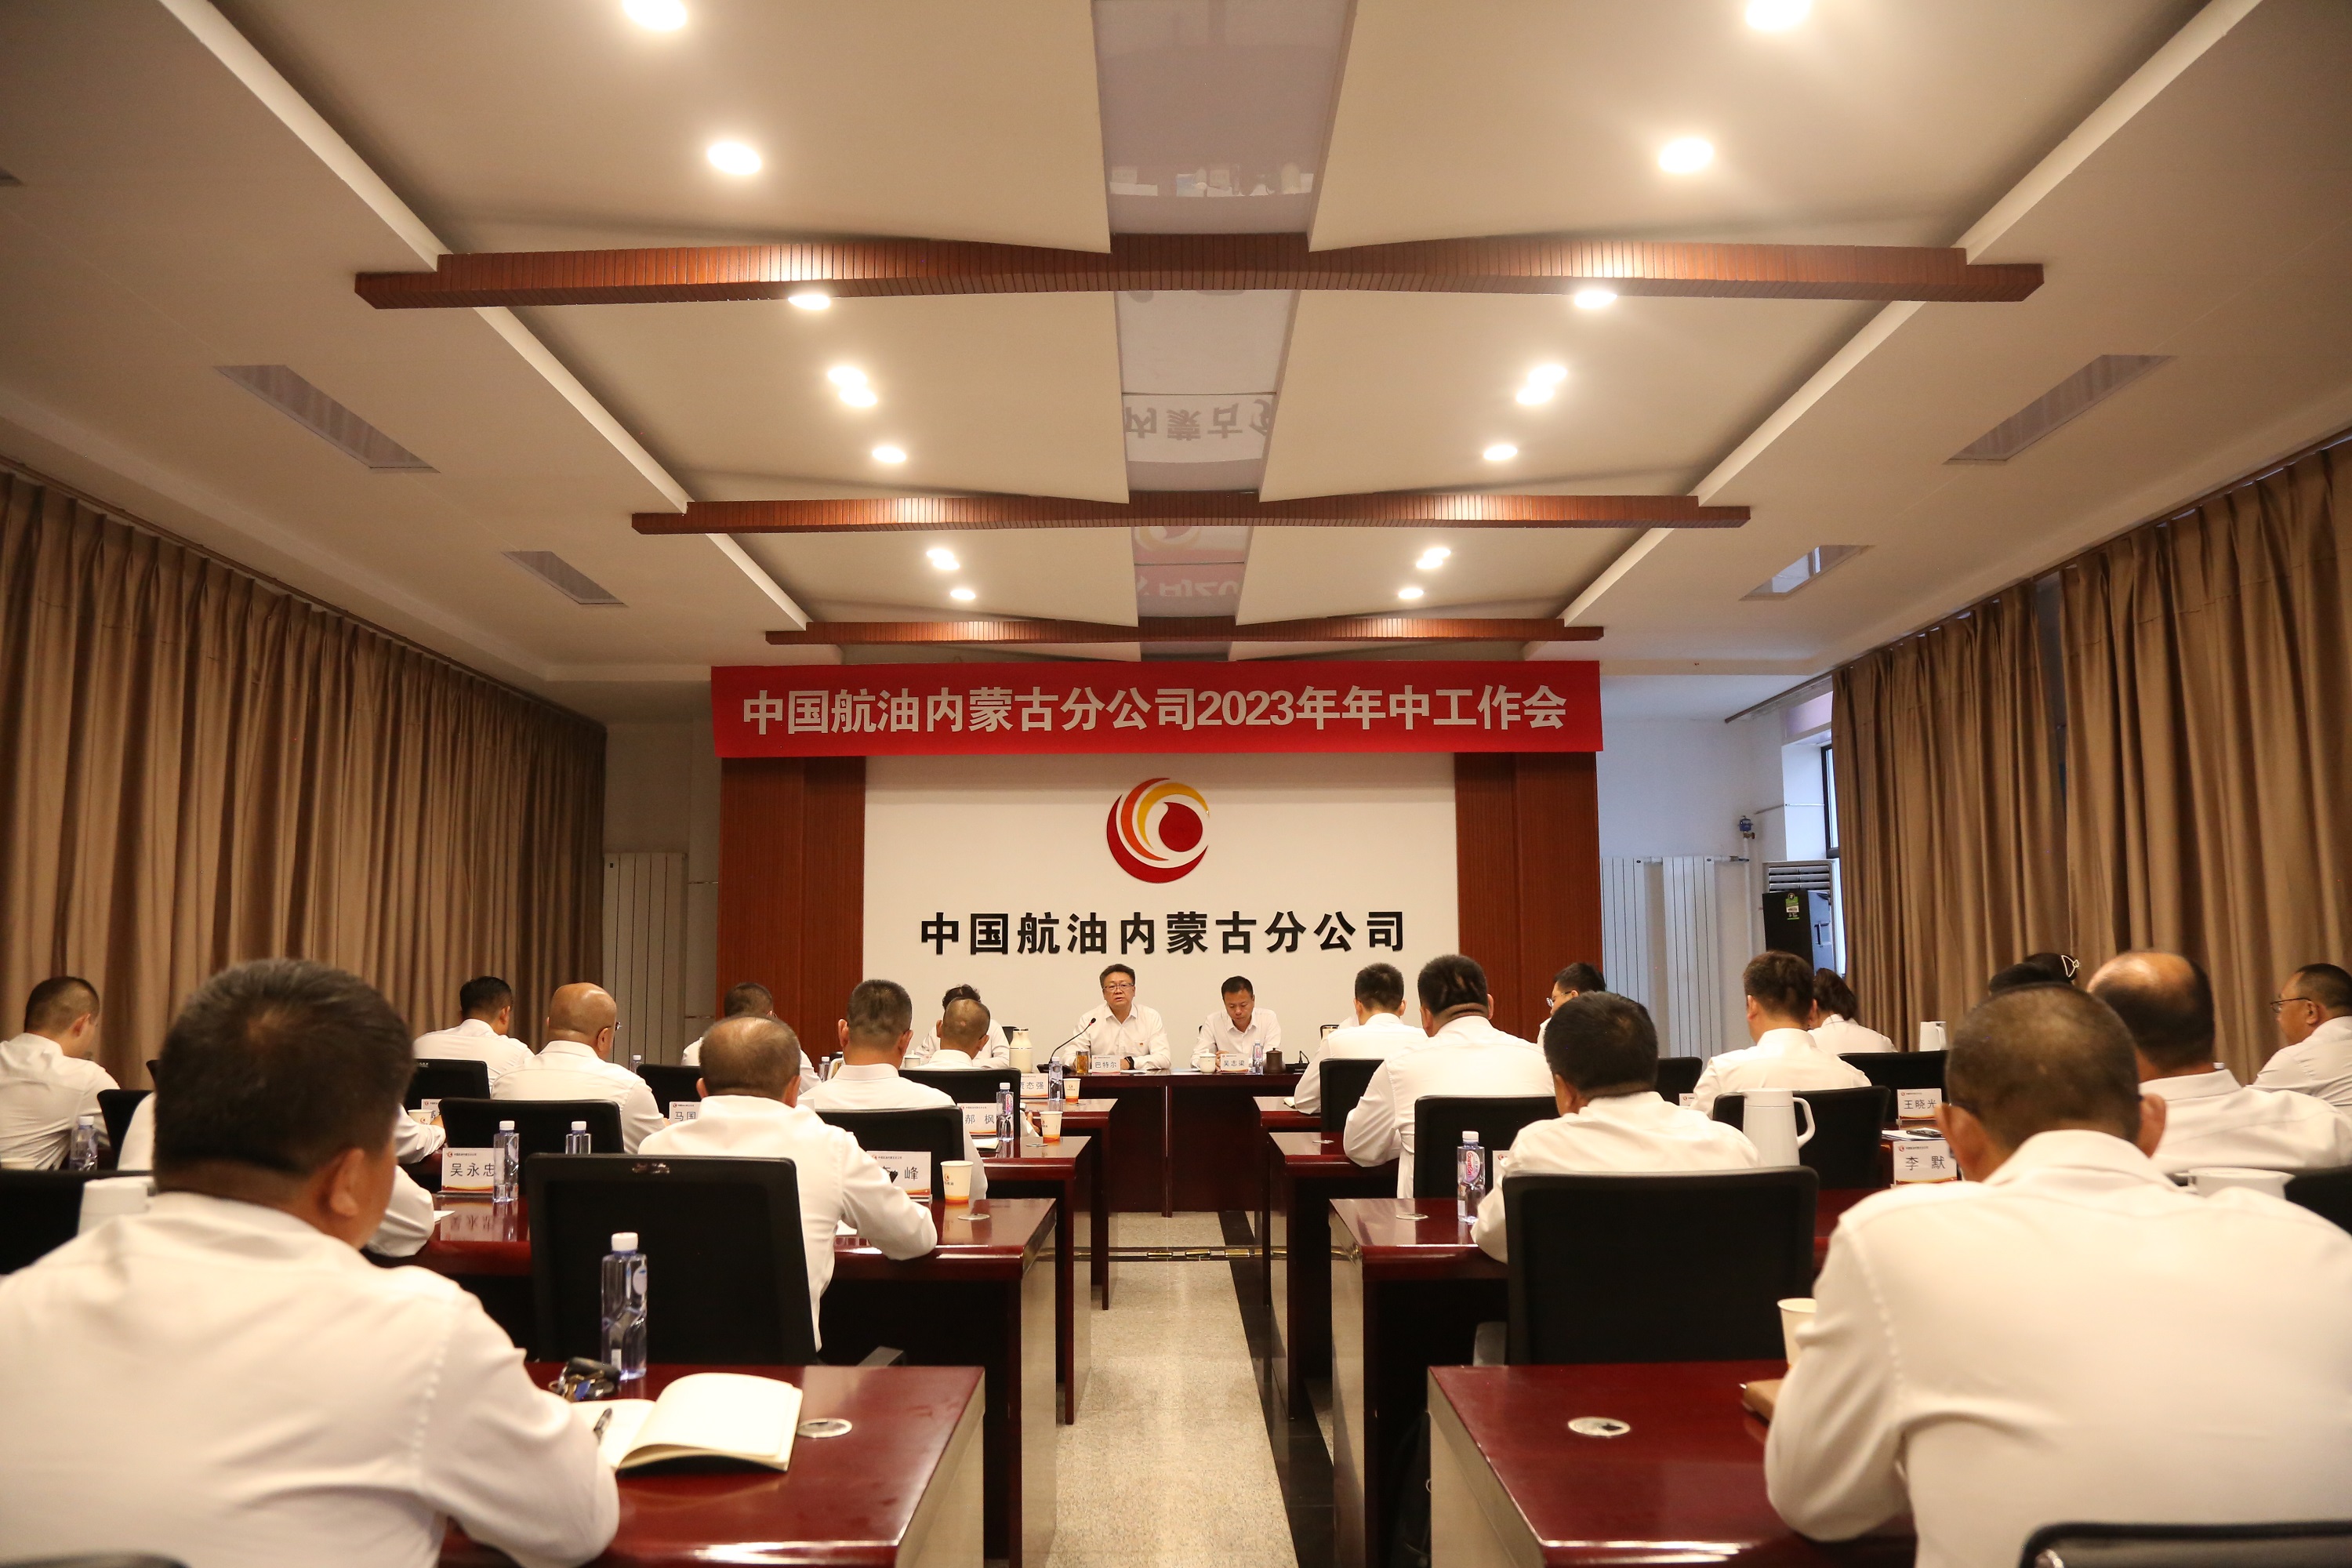 中国航油内蒙古组织召开2023年年中工作会议暨三十年成果回顾展